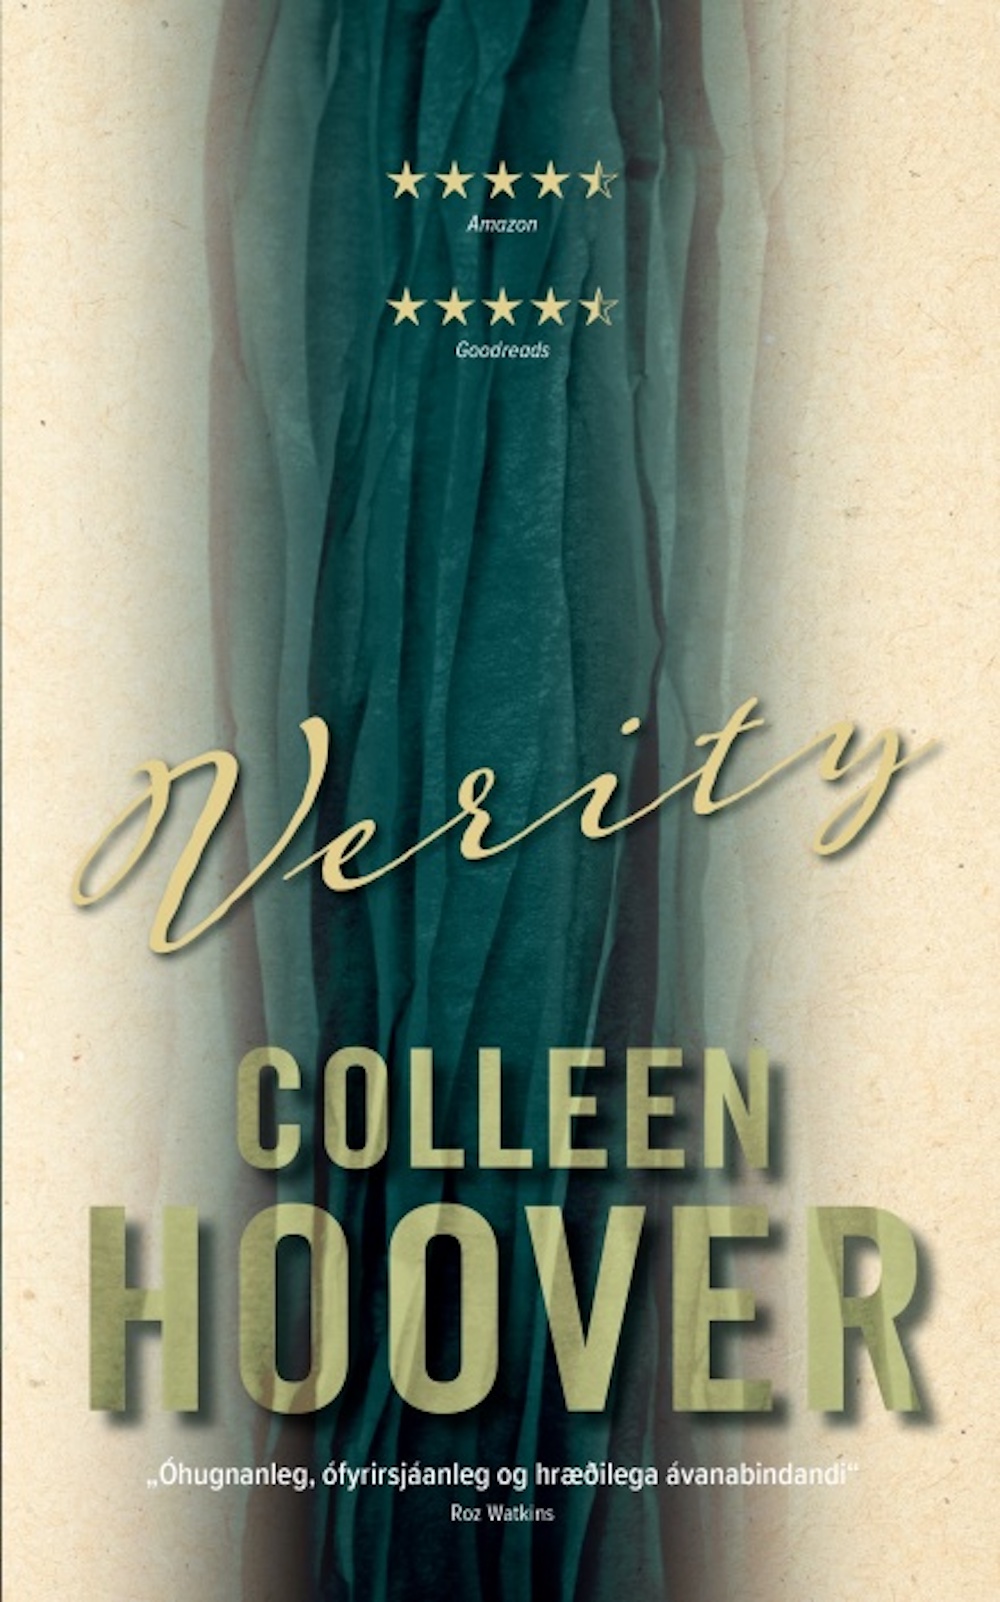 Verity Colleen Hoover